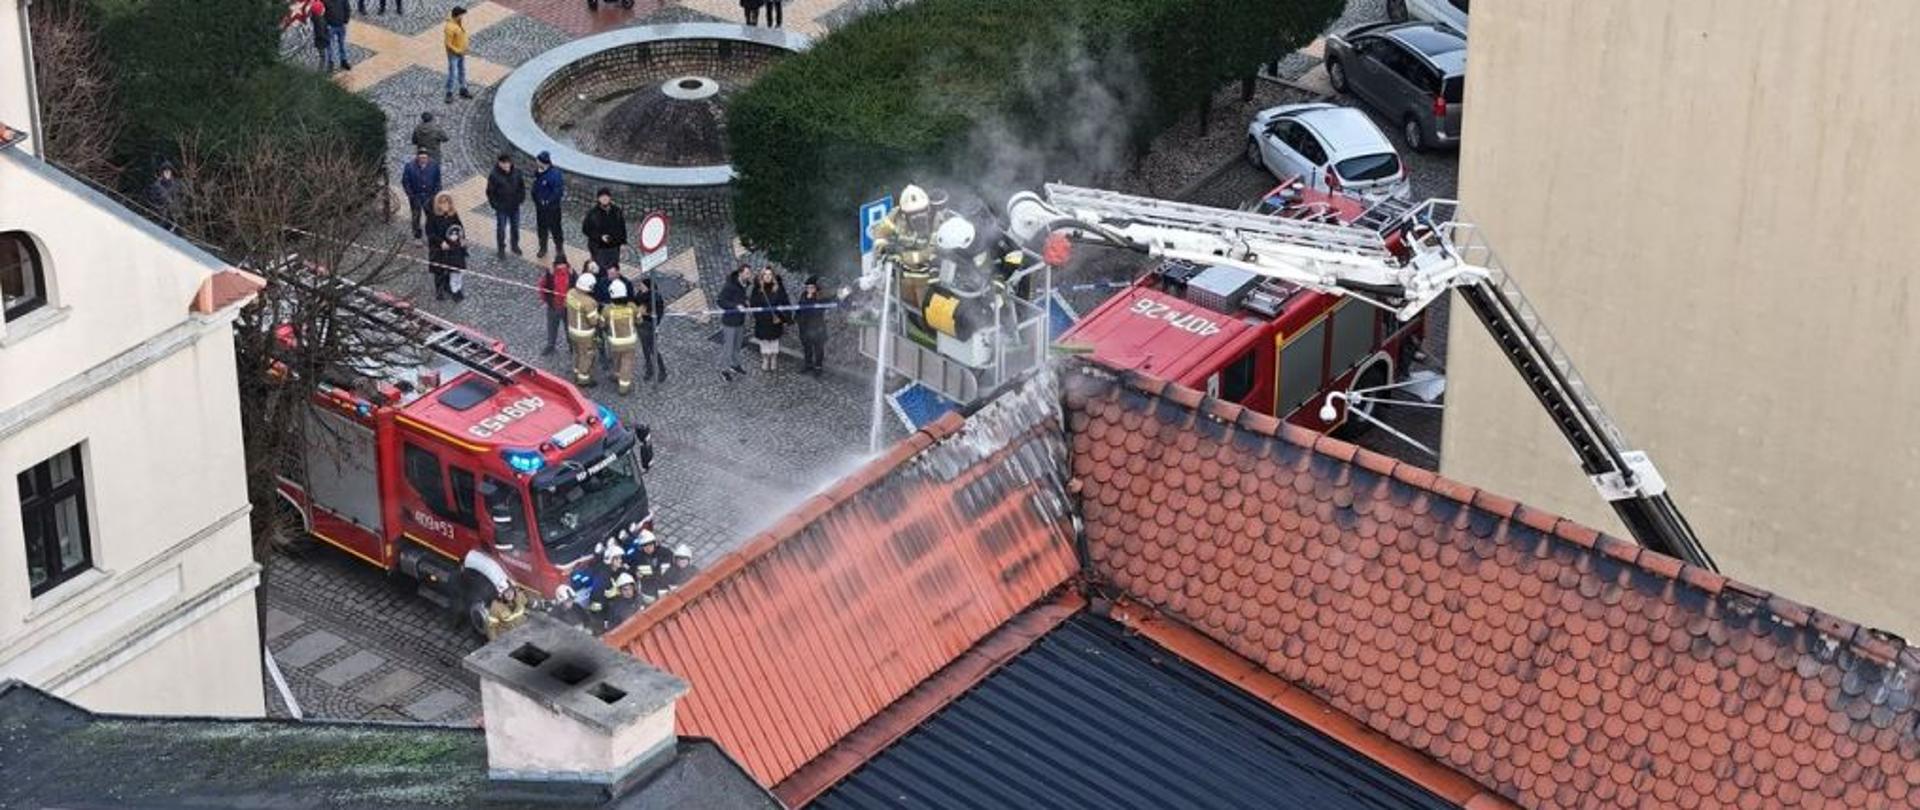 Zdjęcie wykonane z drona. Centralny punkt zdjęcia stanowi kosz podnośnika i strażacy gaszący pożar.